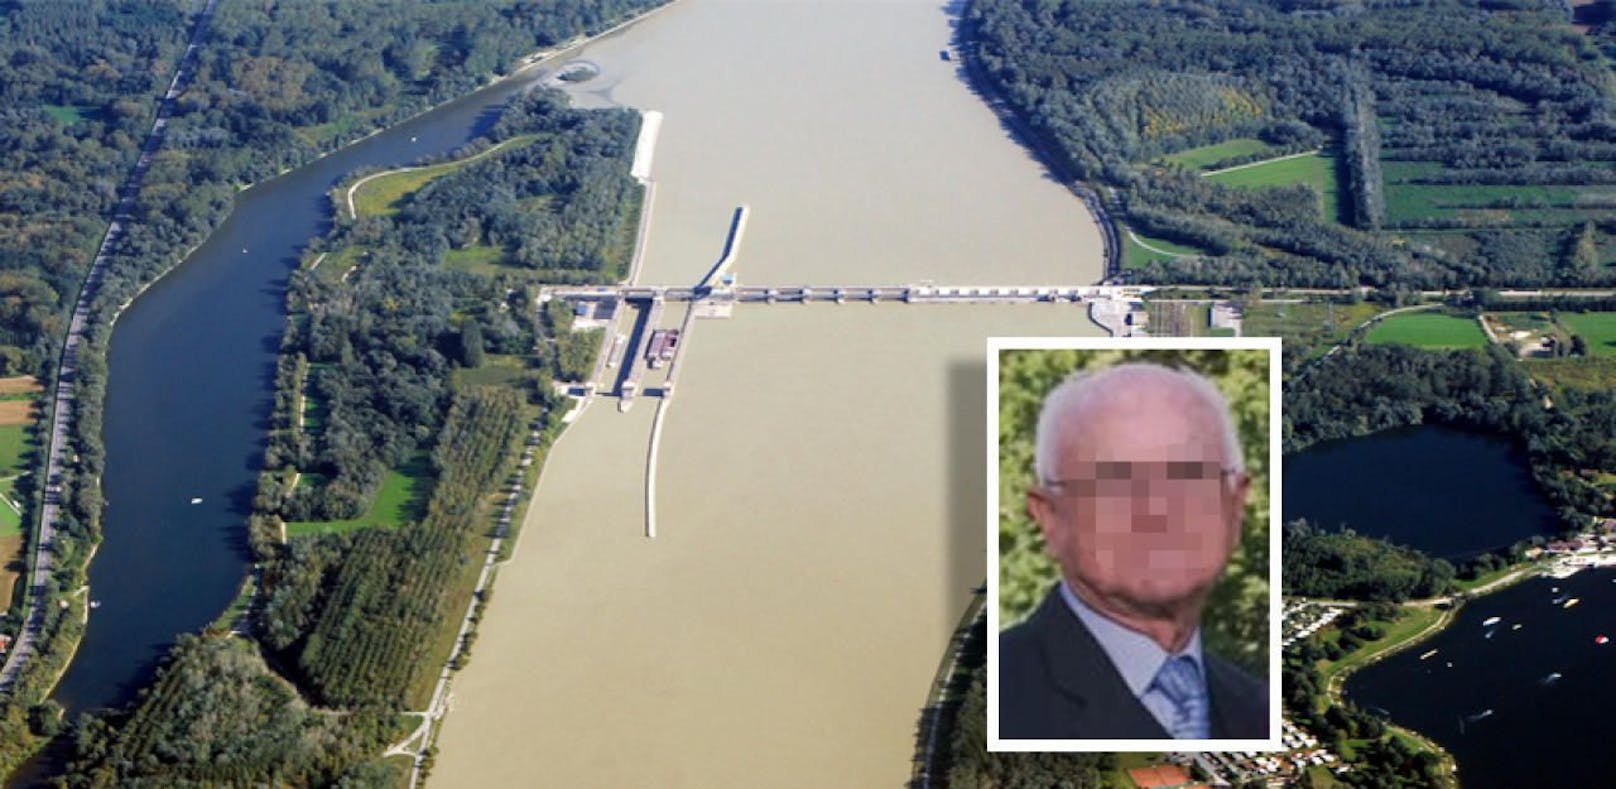 Vermisster Pensionist tot in der Donau gefunden